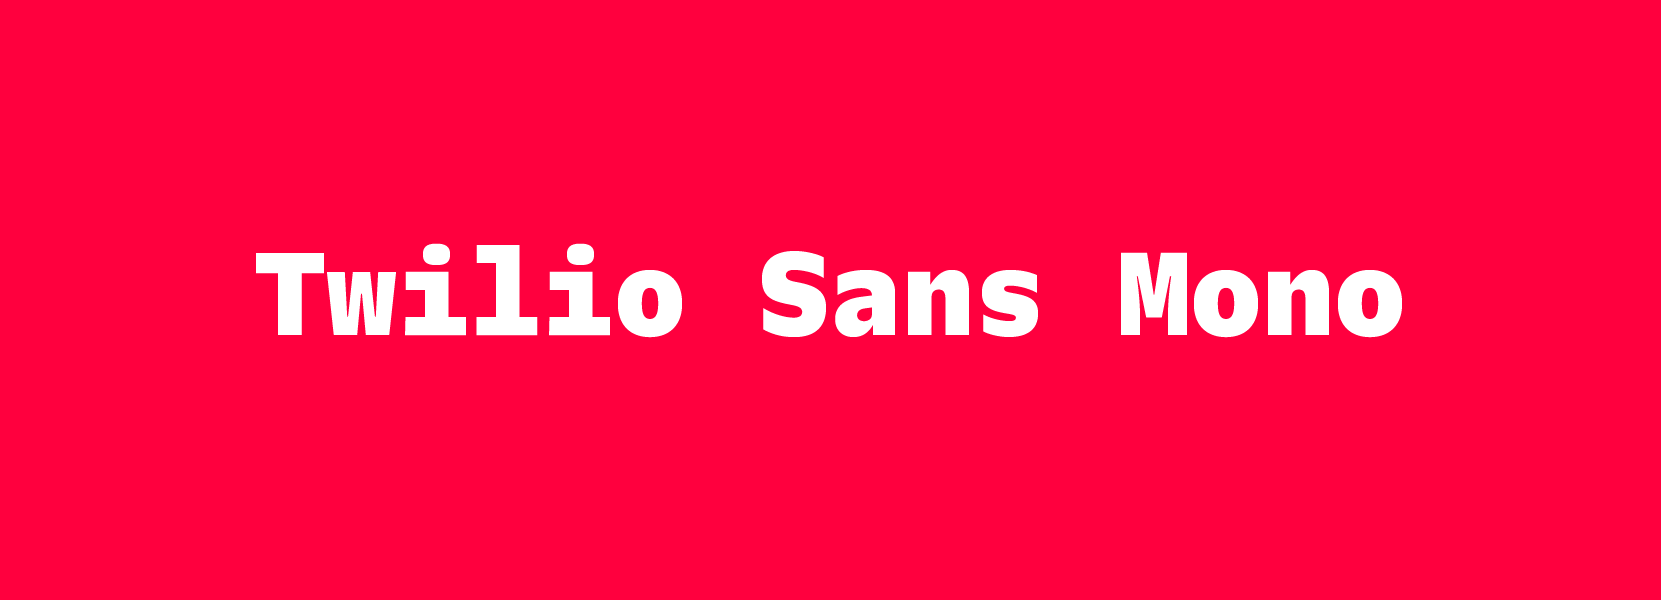 Twilio Sans Mono written in Twilio Sans Mono on a red background